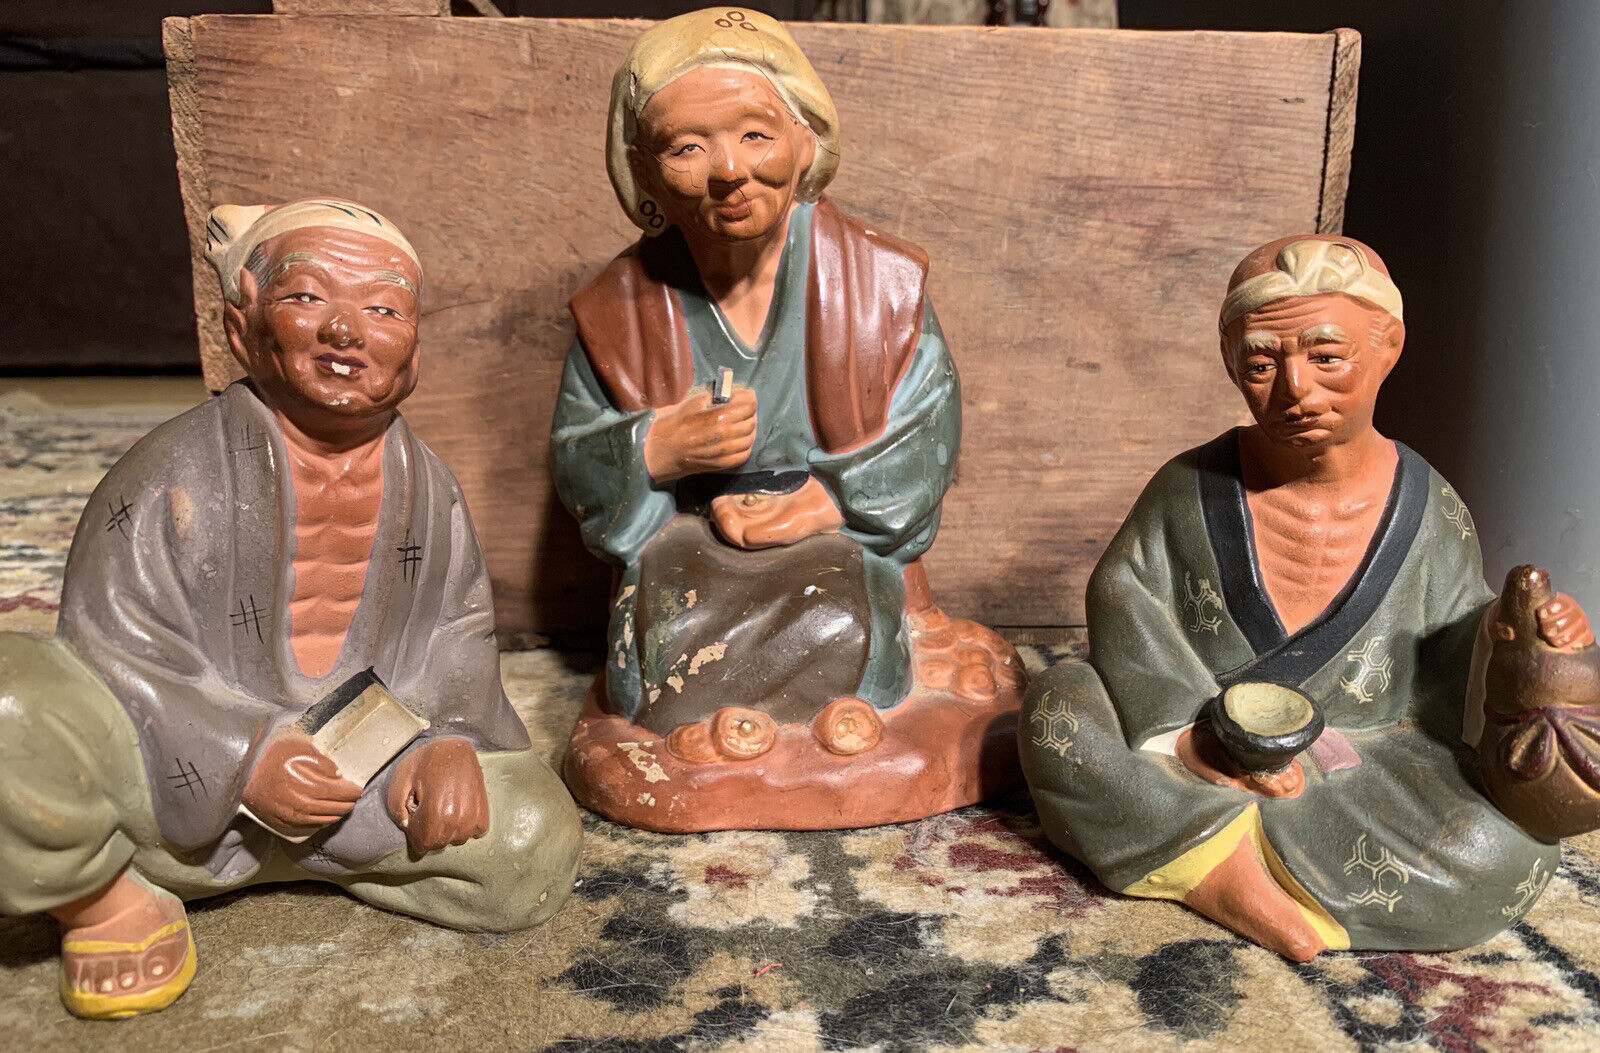 Vintage Japanese Figurine Lot Realistic Slice Of Life Original Anart Creation